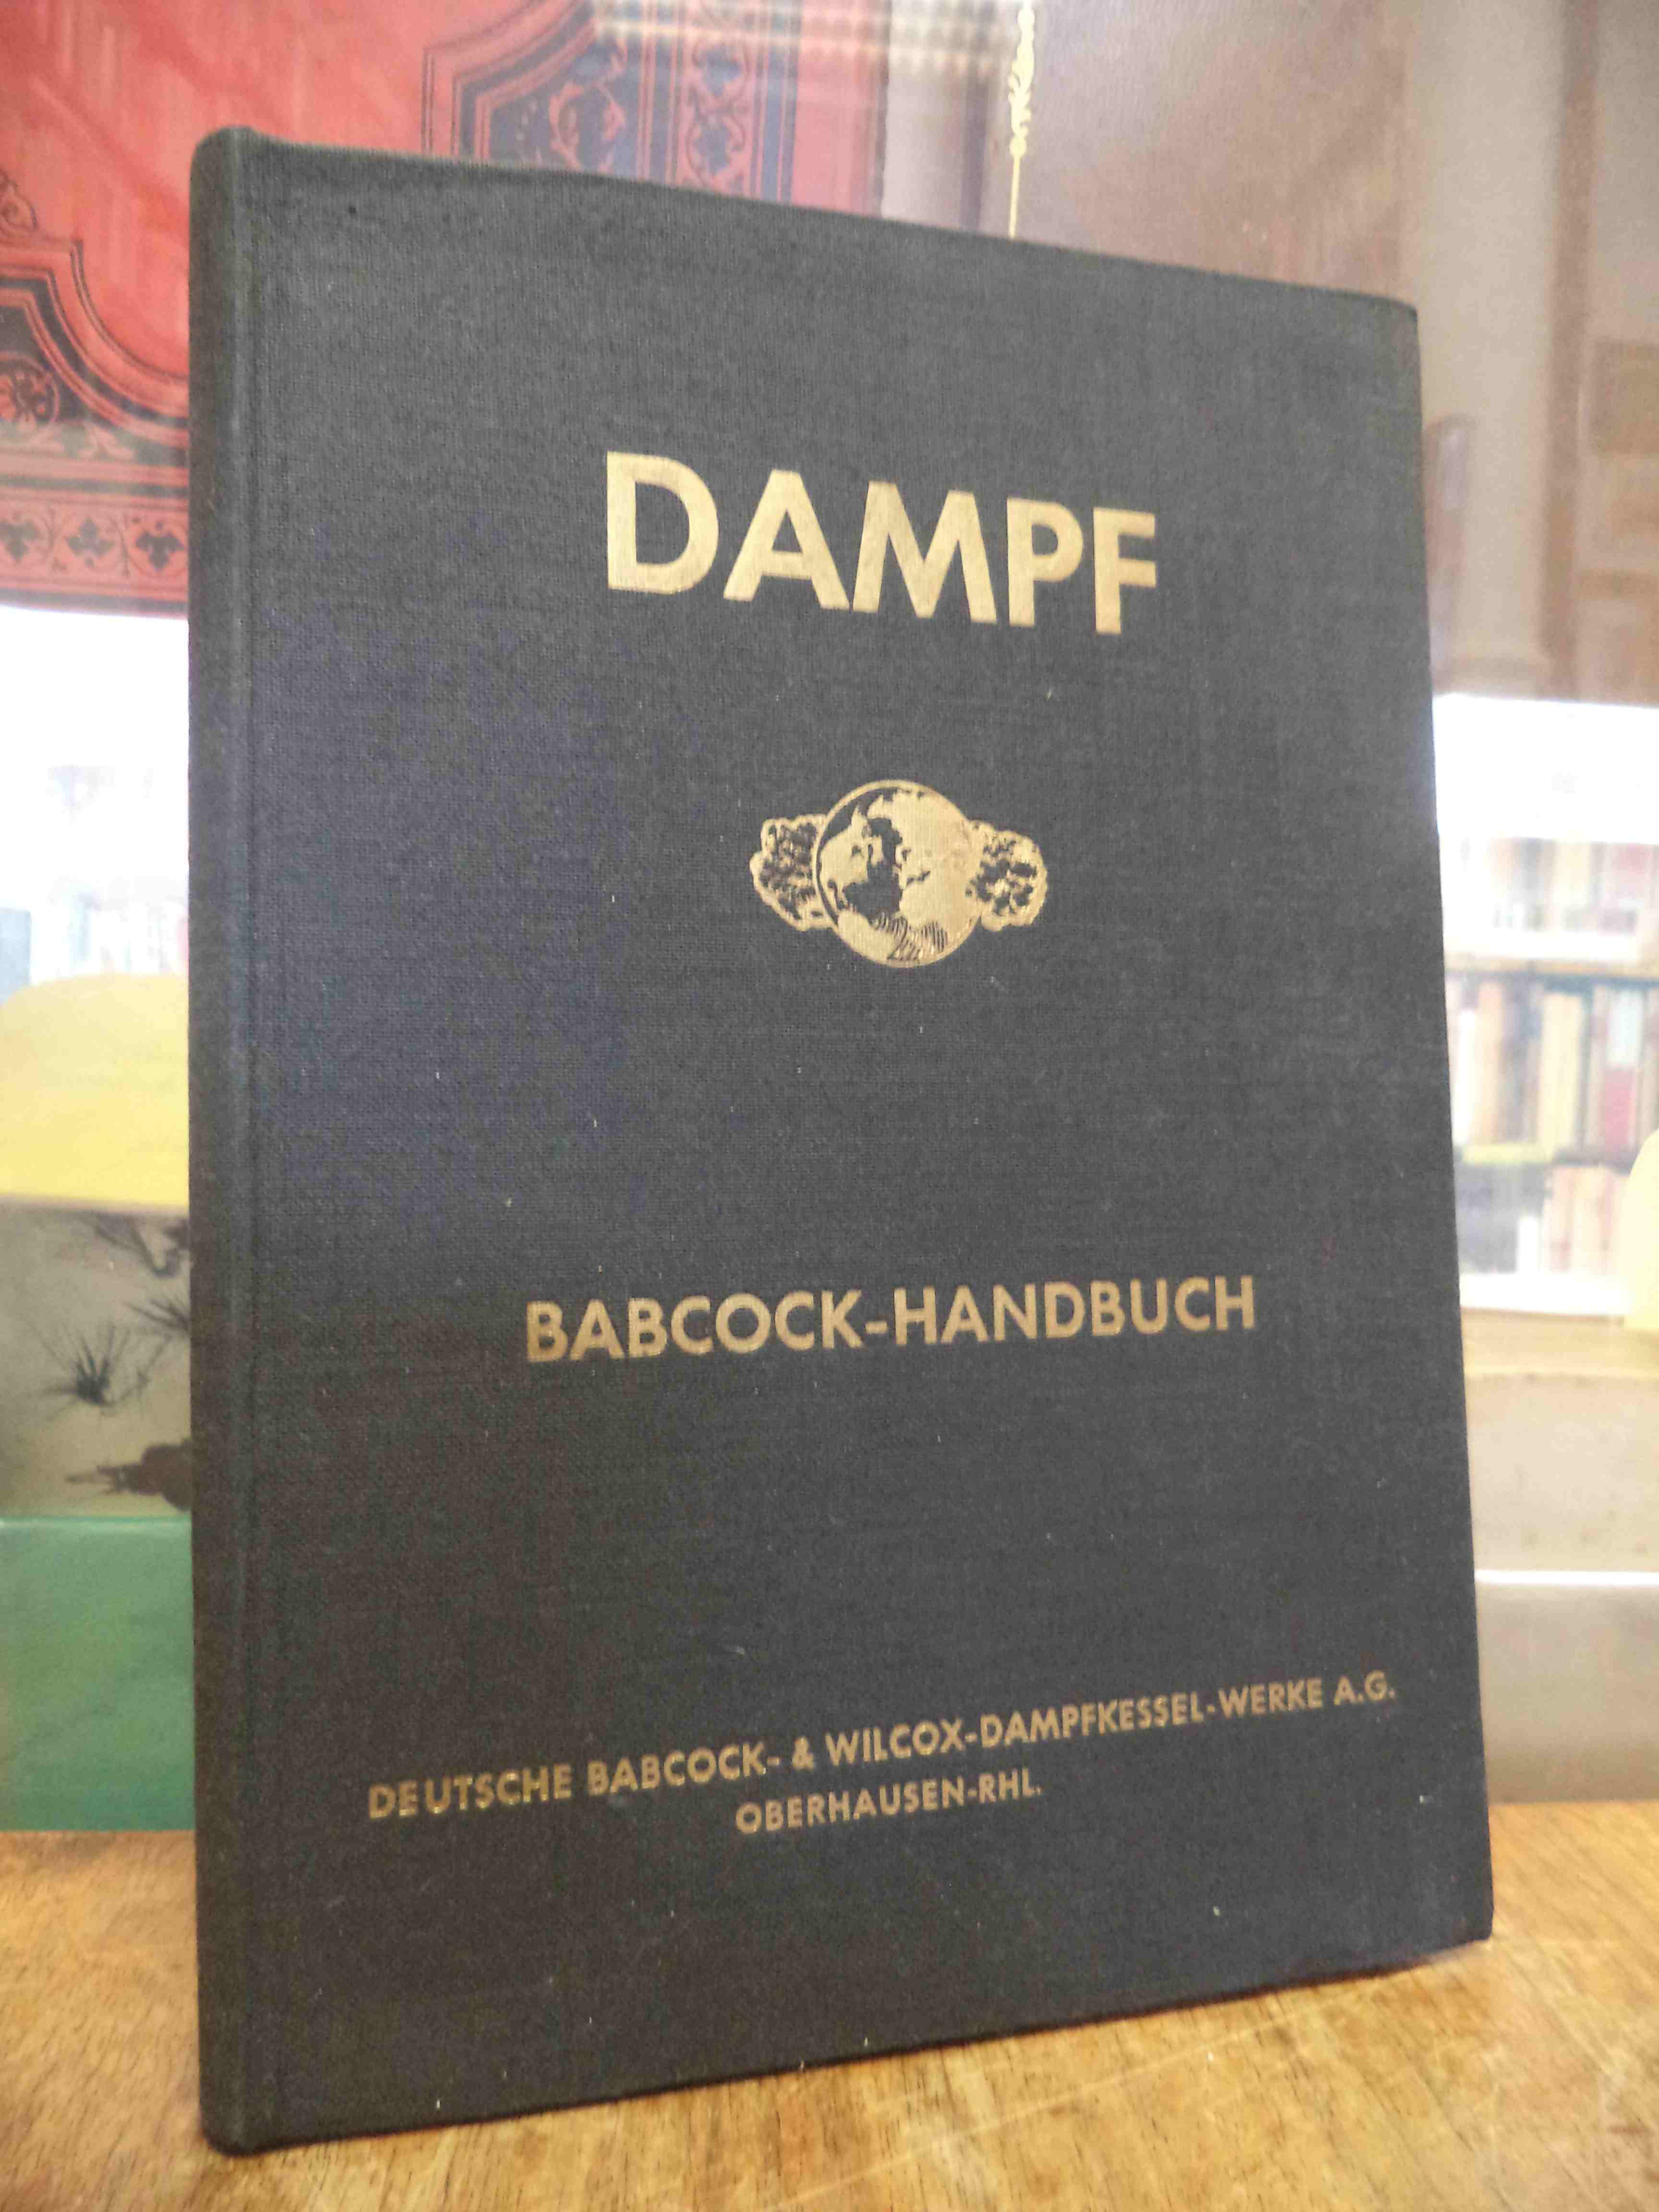 Deutsche Babcock- & Wilcox-Dampfkessel-Werke A.G. (Hrsg.), Dampf : Babcock-Handb